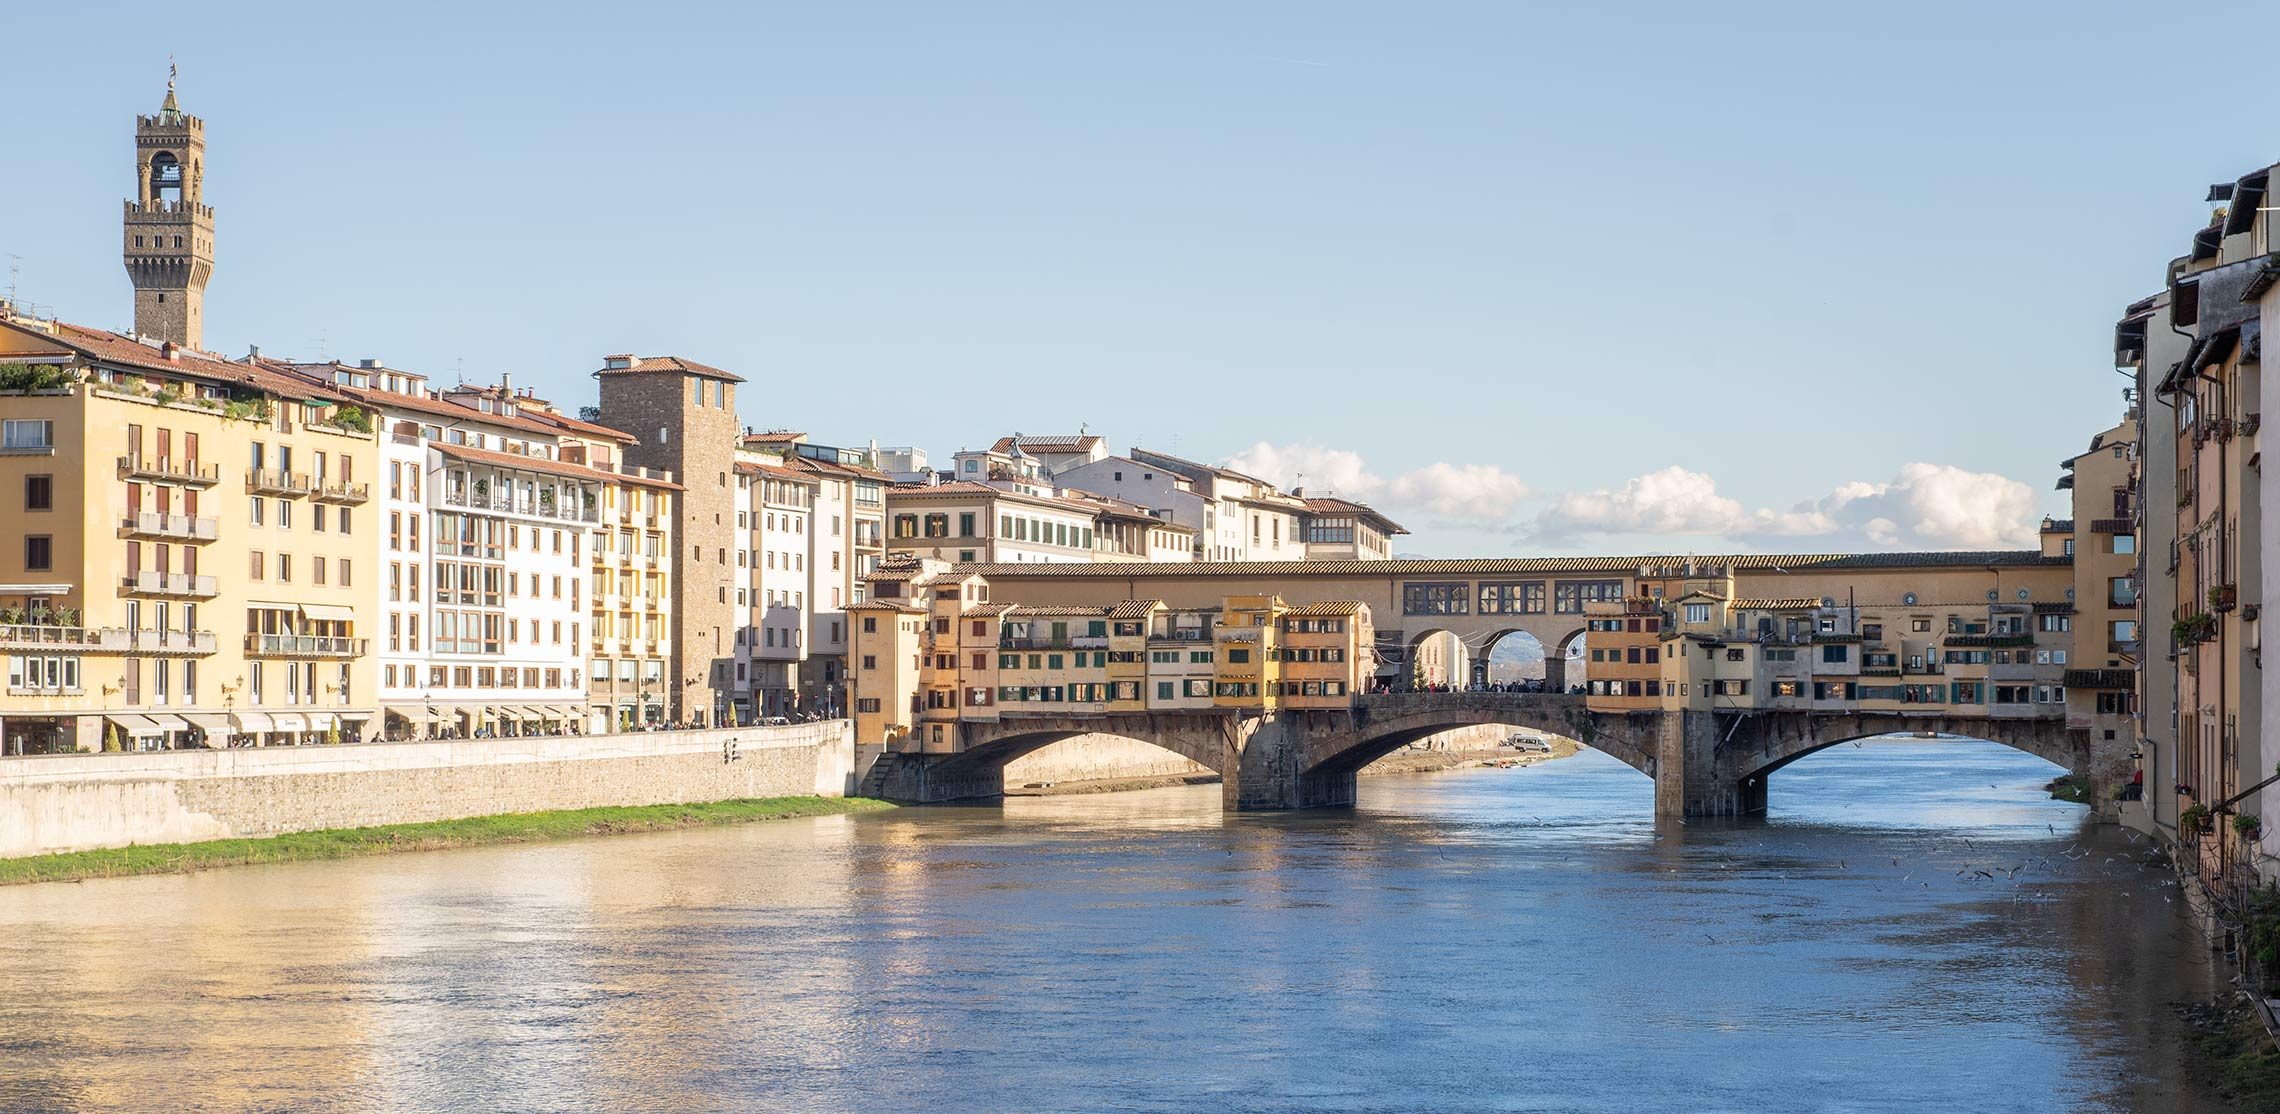 Der Ponte Vecchio über den Arno verbindet die Altstadt von Florenz mit Oltrarno.